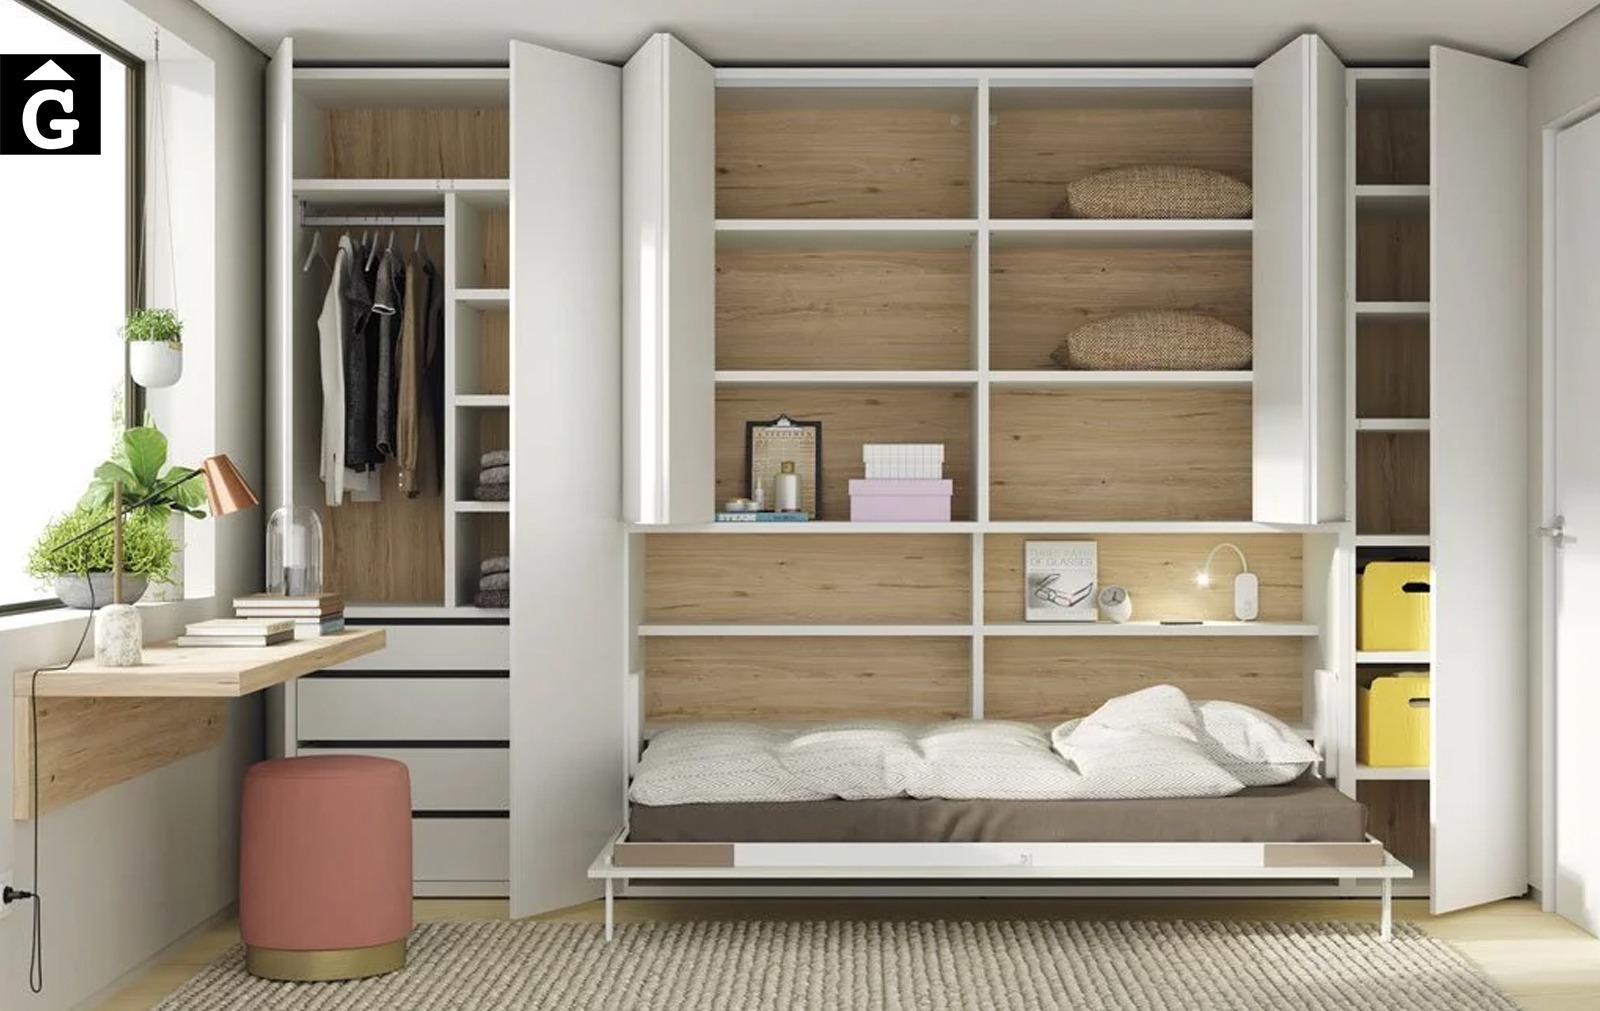 Habitació estudi amb armari llit abatible | Interior armari vist | Up & Down | llits abatibles | Pràctics, saludables i segurs | Jotajotape | mobles Gifreu